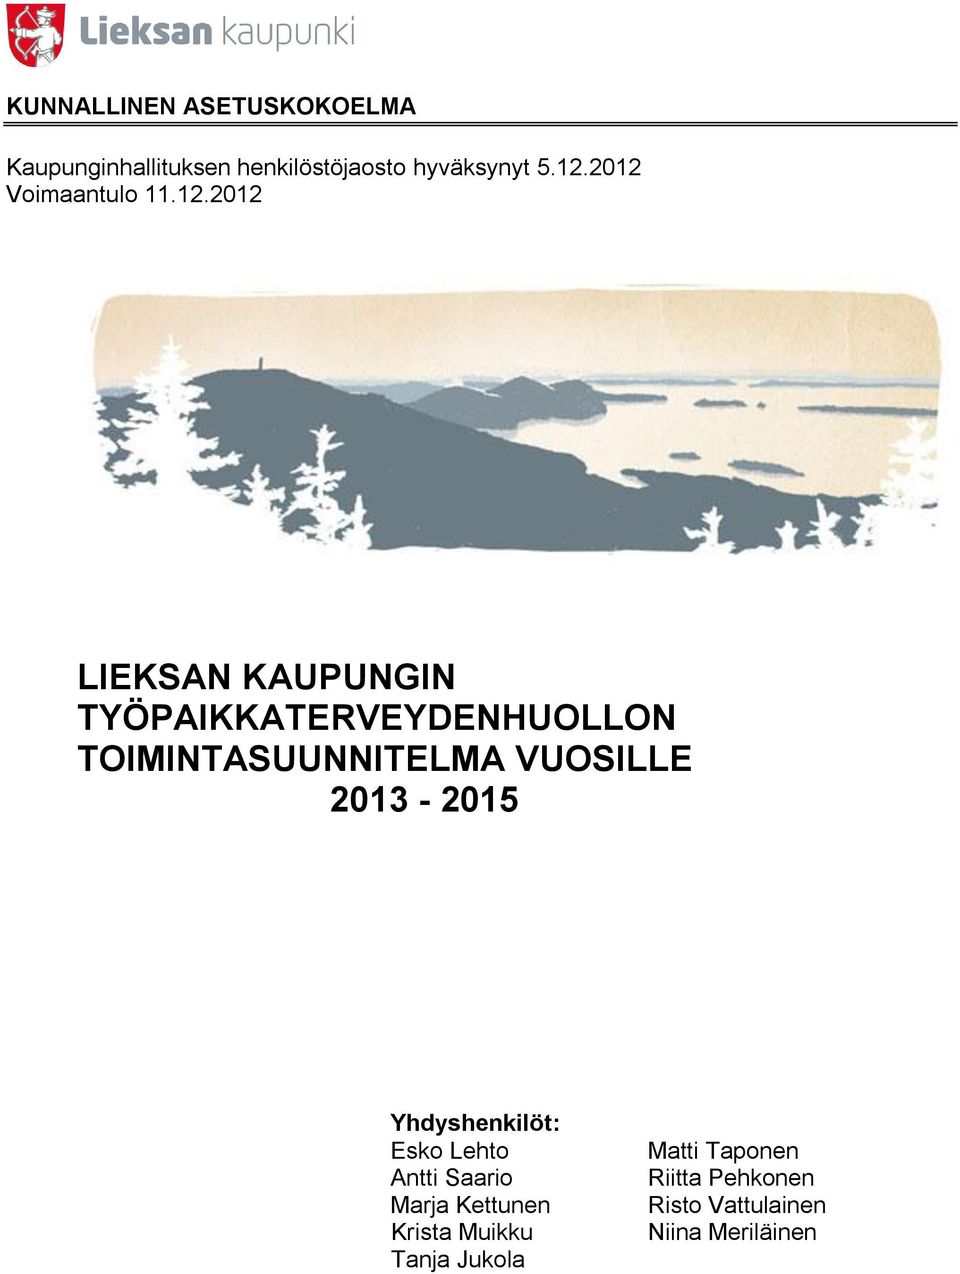 TOIMINTASUUNNITELMA VUOSILLE 2013-2015 Yhdyshenkilöt: Esko Lehto Antti Saario Marja